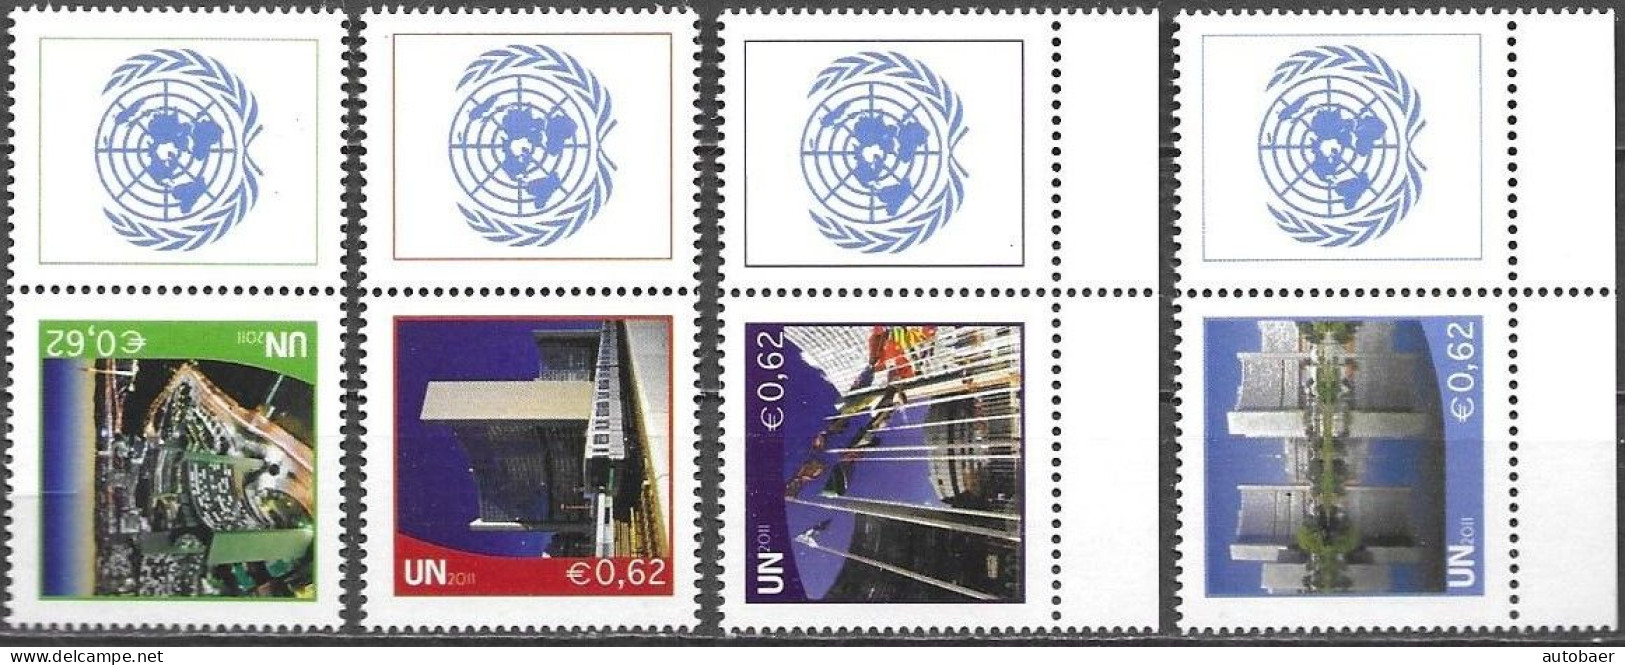 United Nations UNO UN Vereinte Nationen Vienna Wien 2011 Greetings Grussmarken 4v. Mi. 719-21+23 MNH ** Neuf - Unused Stamps